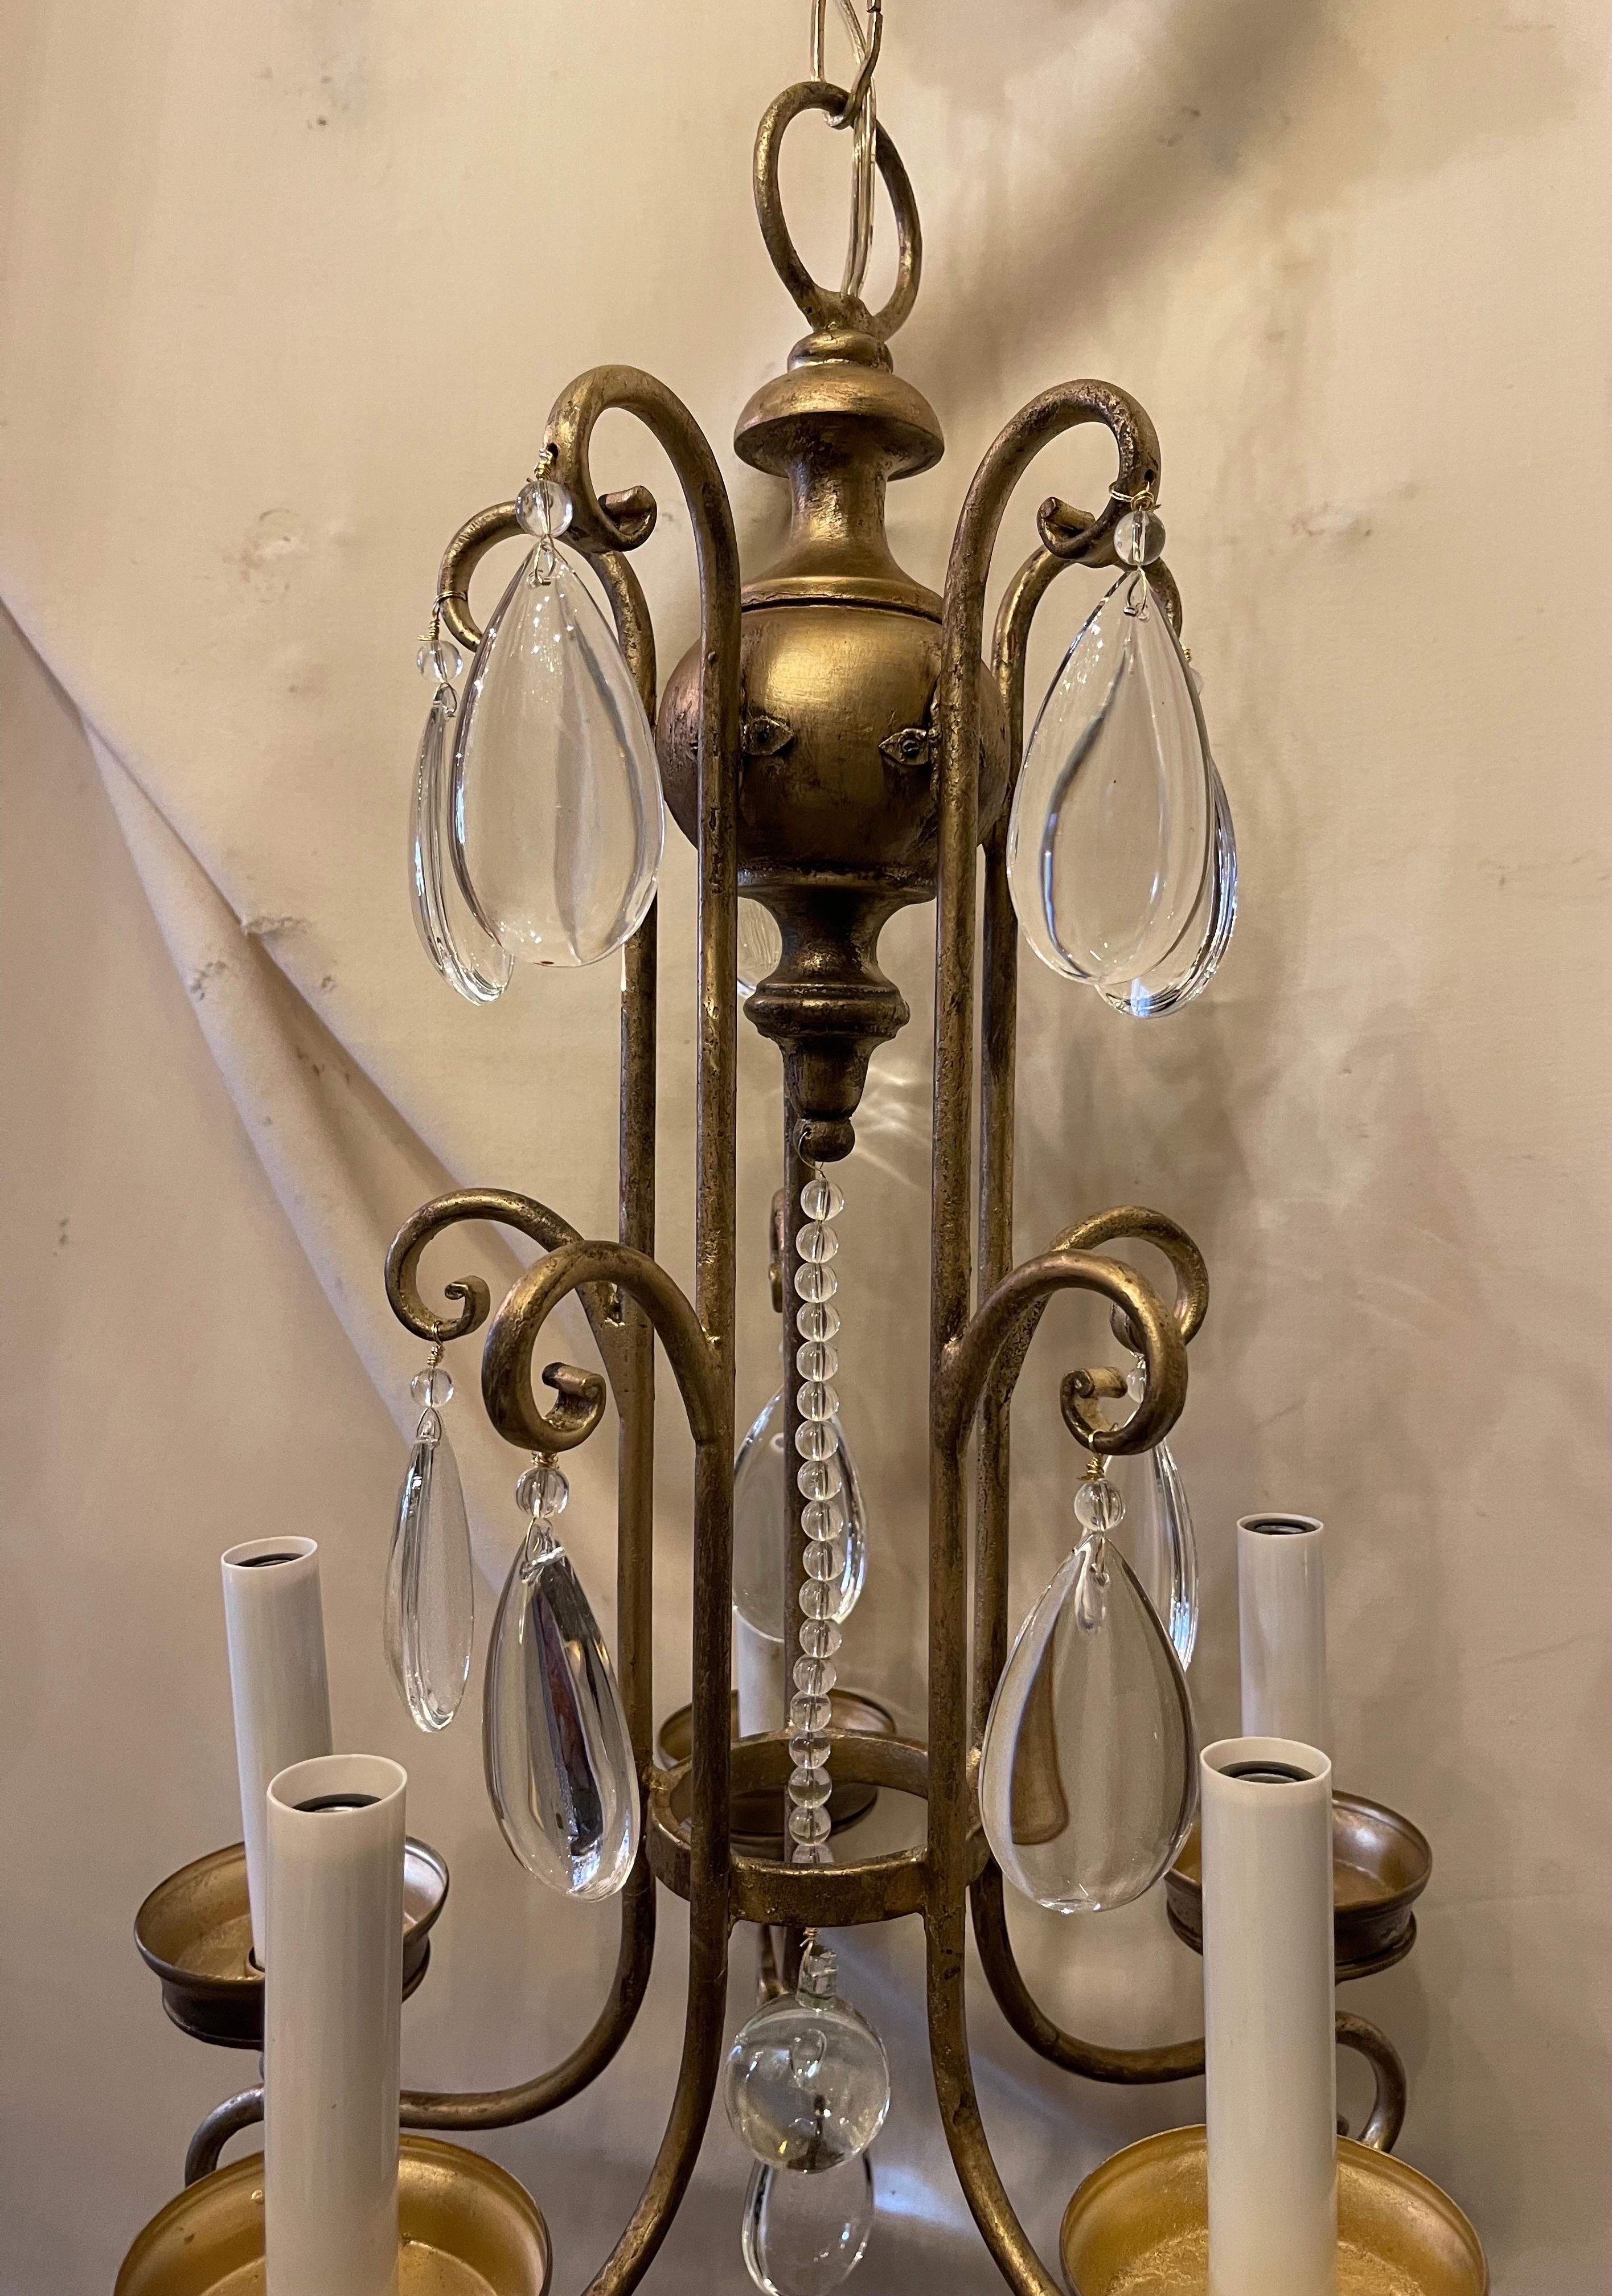 Merveilleux lustre à 5 chandeliers de style Maison Bagues du milieu du siècle dernier, en or doré et cristal. Ce lustre a été recâblé et est accompagné d'une chaîne et d'un baldaquin.